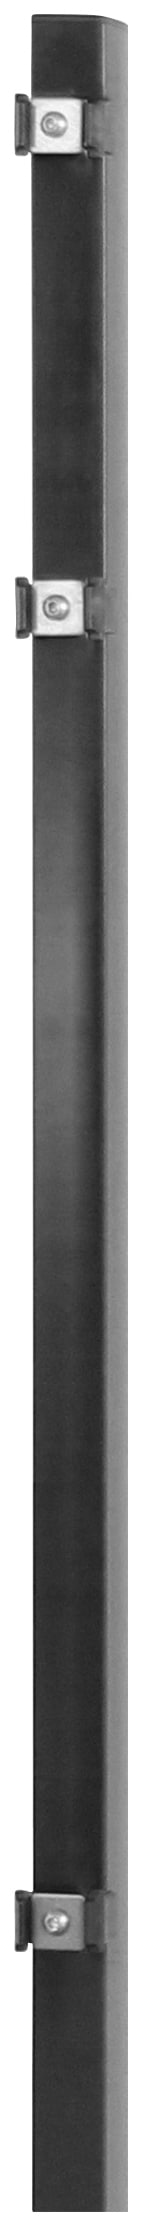 Arvotec Zaunpfosten »ESSENTIAL 80«, 4x4x120 cm für Mattenhöhe 80 cm, zum Einbetonieren